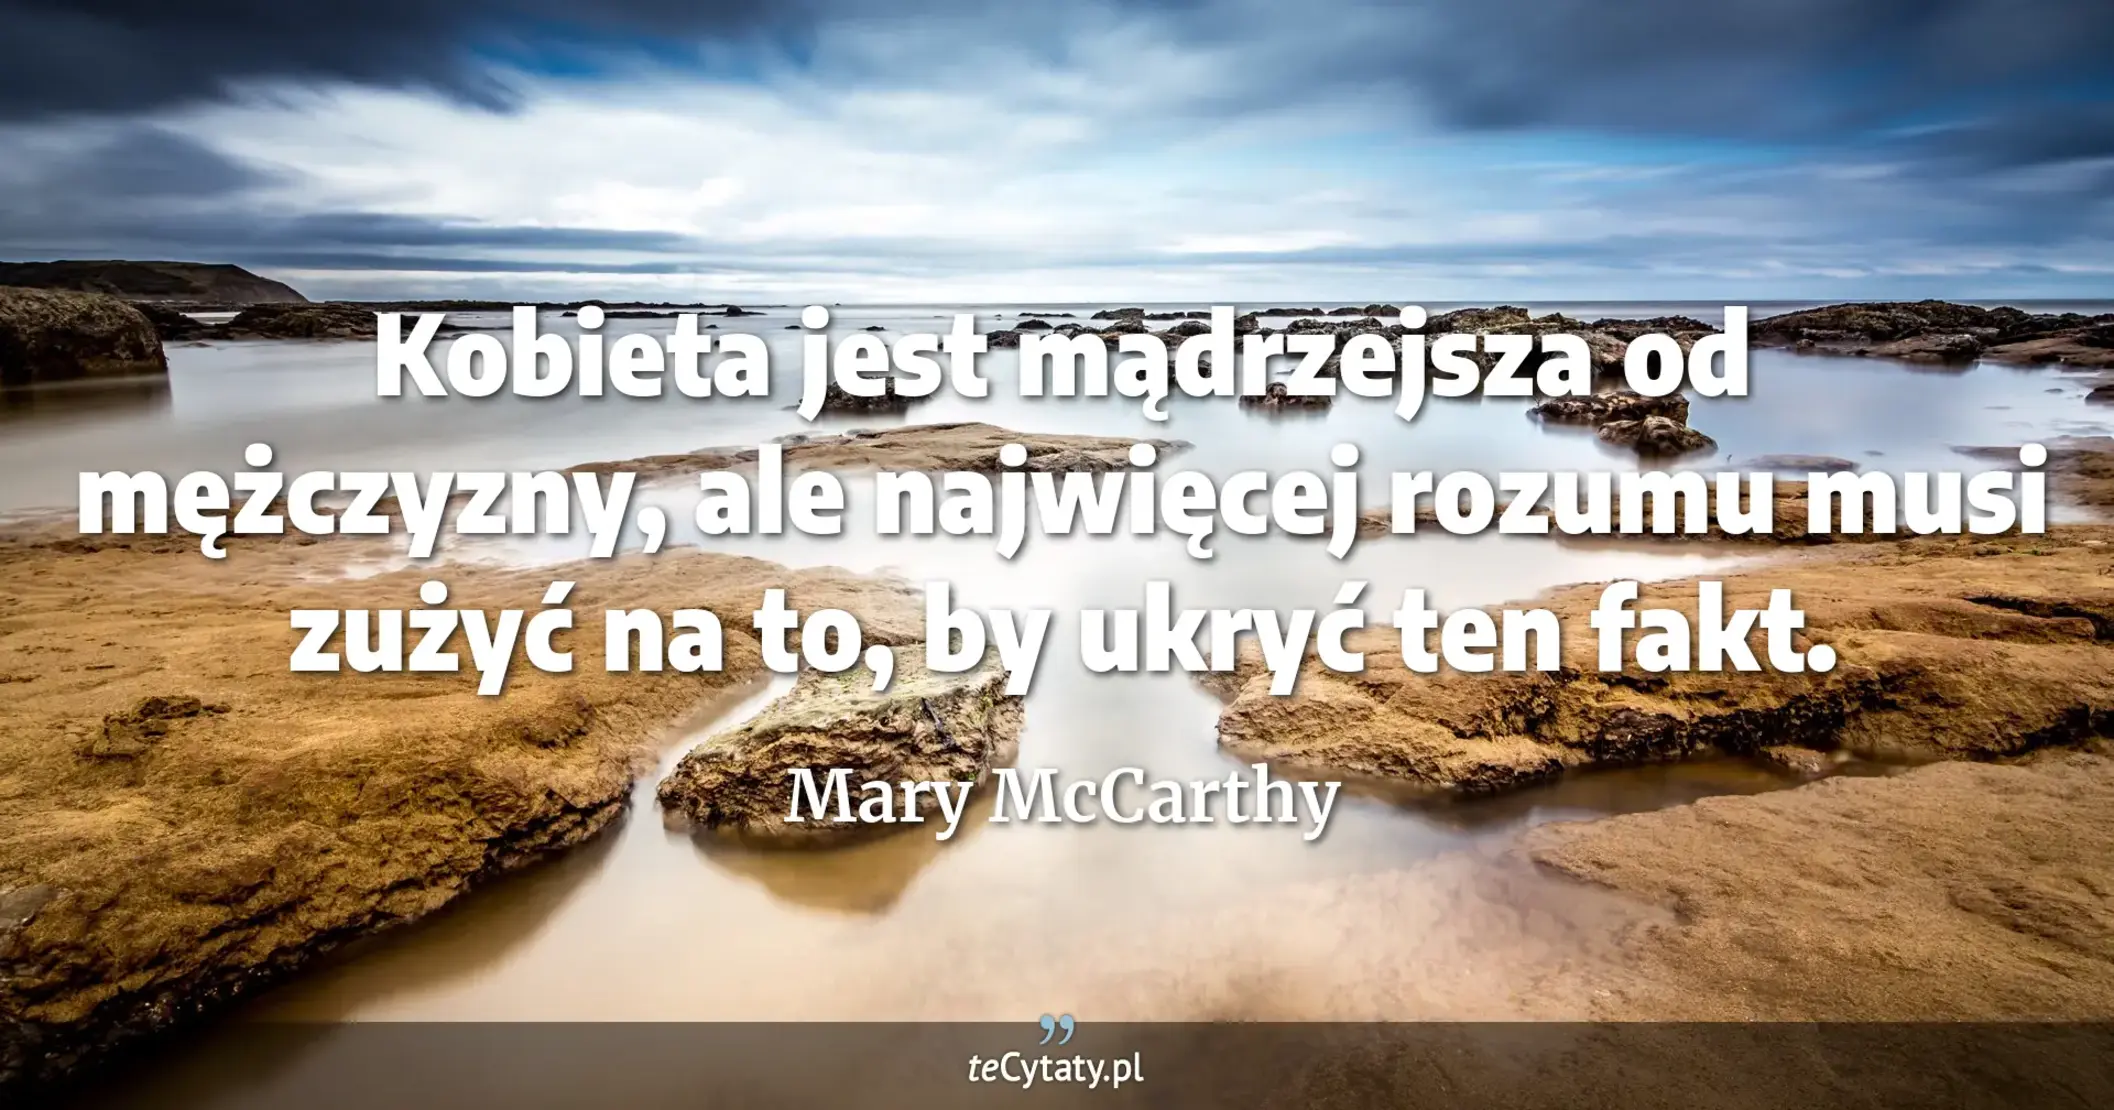 Kobieta jest mądrzejsza od mężczyzny, ale najwięcej rozumu musi zużyć na to, by ukryć ten fakt. - Mary McCarthy